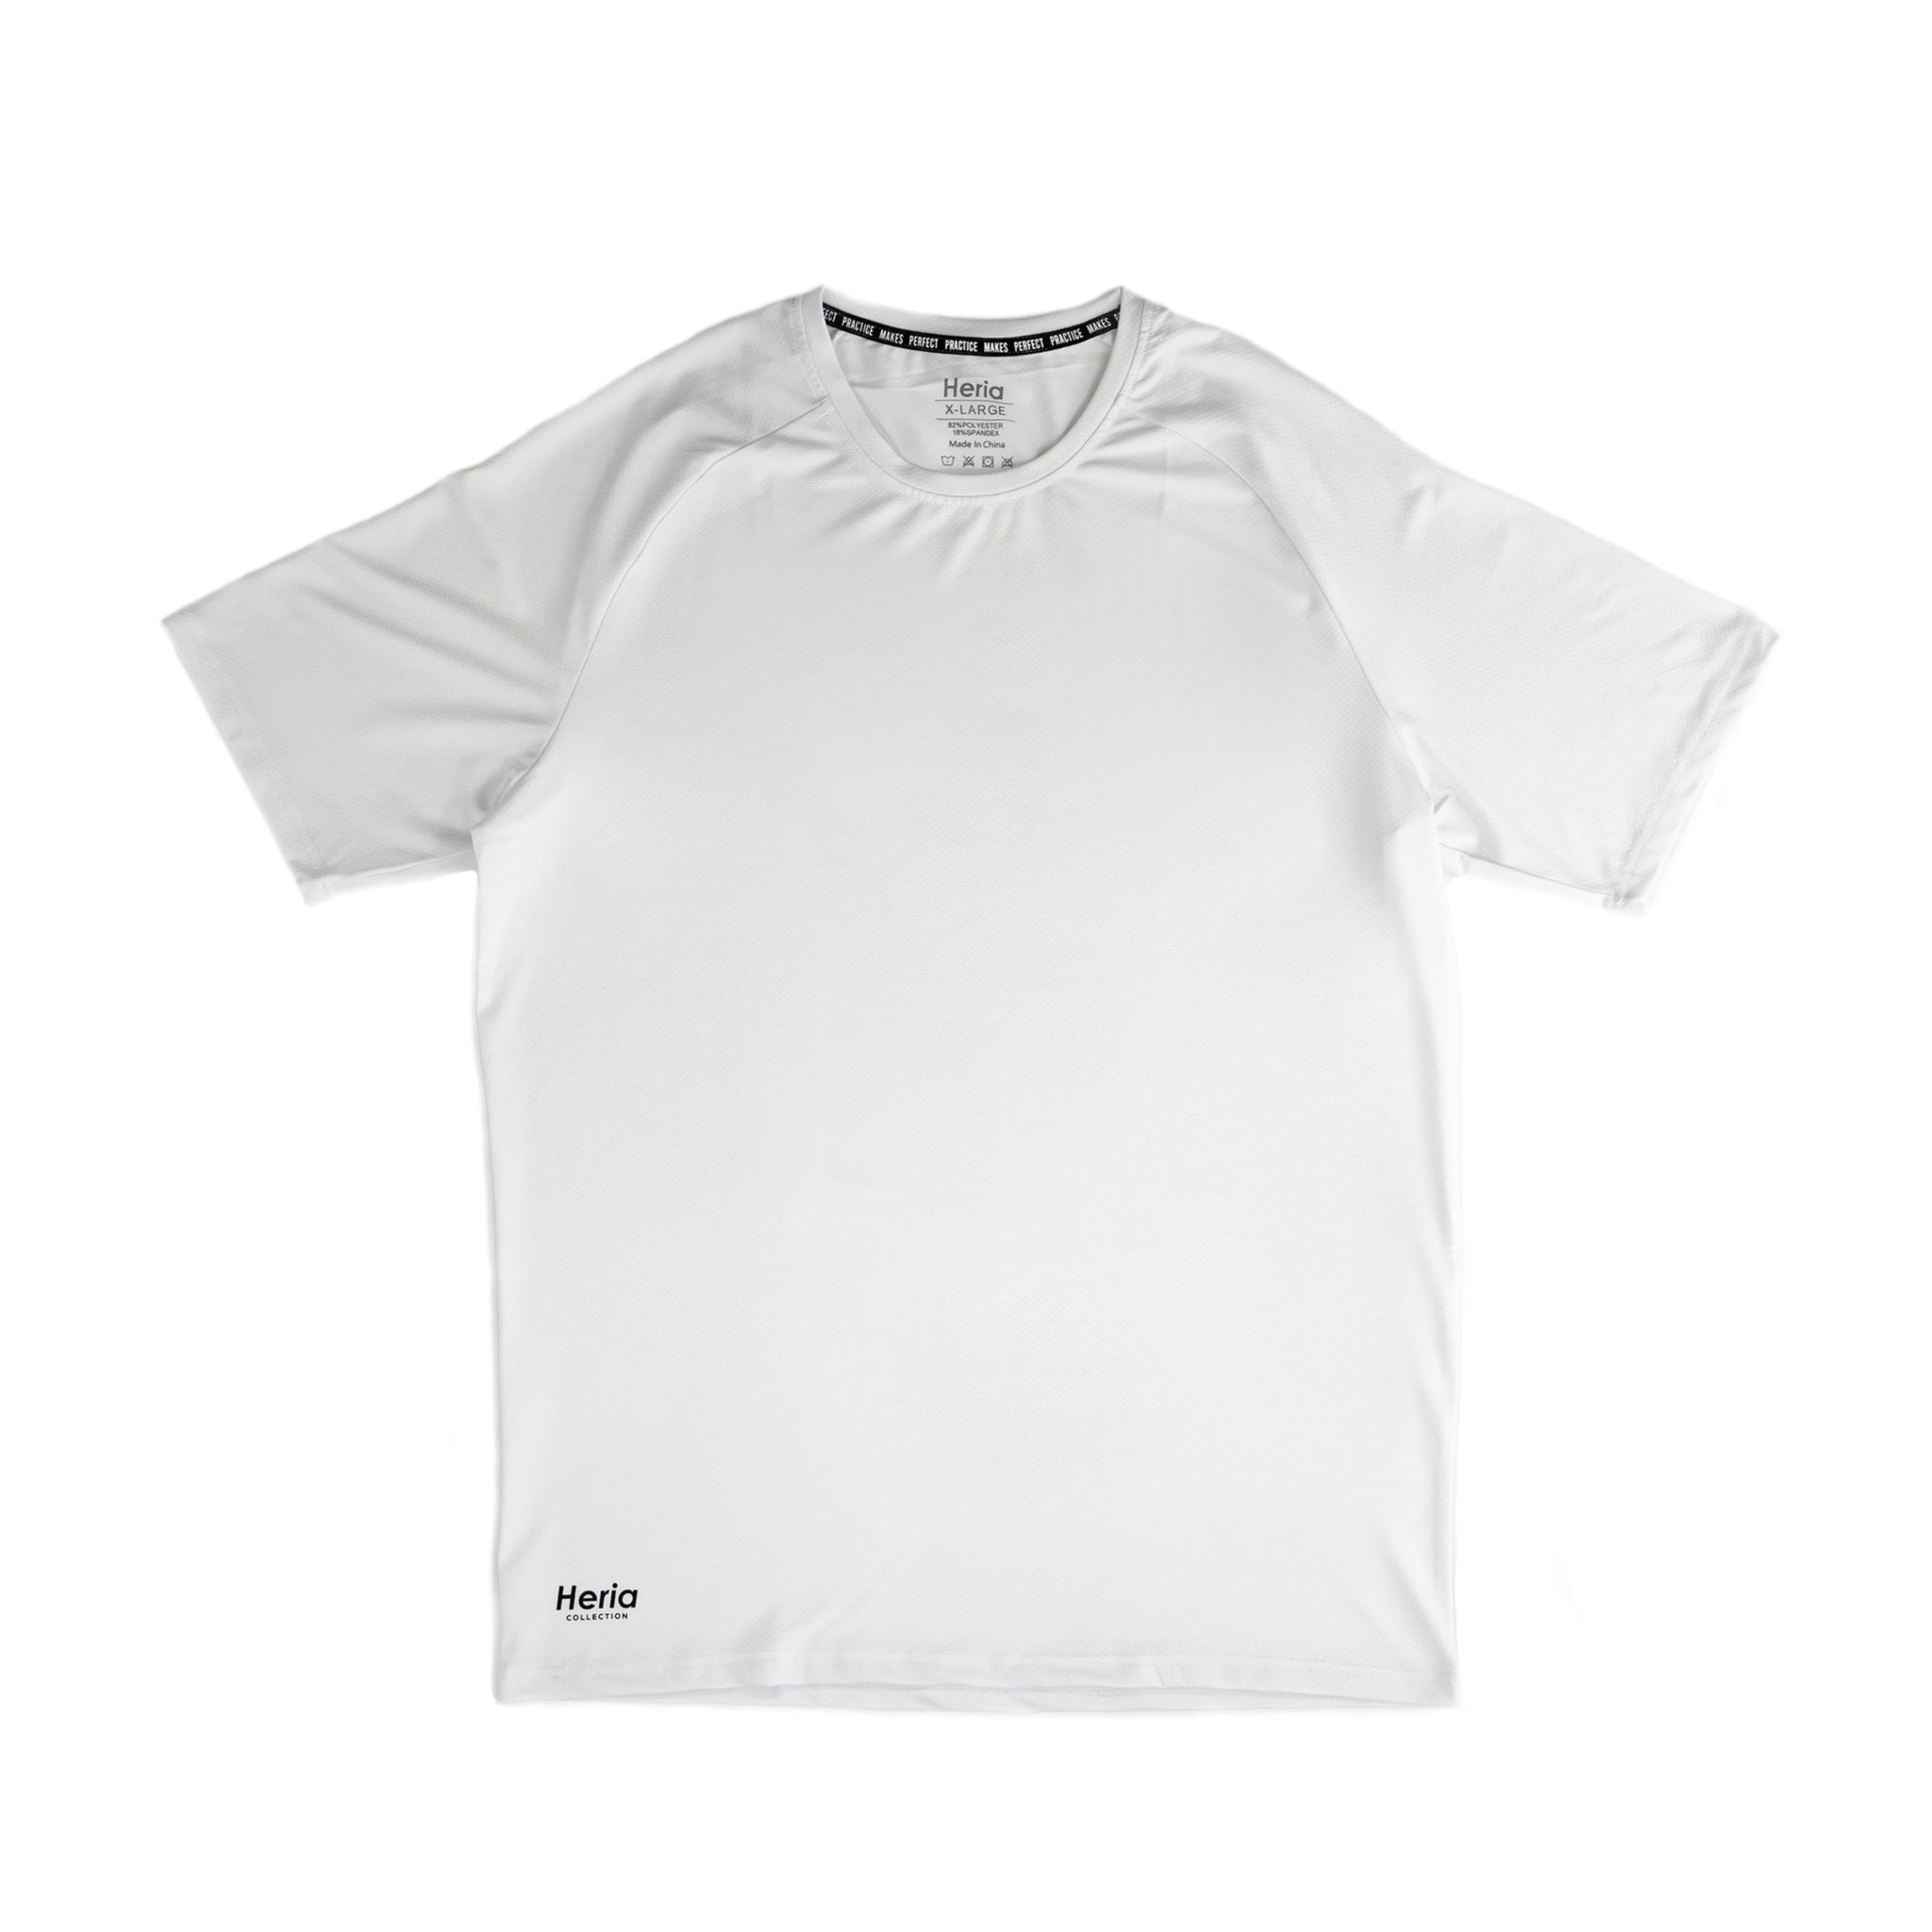 Heria Training T-Shirt - White (6619608186922)